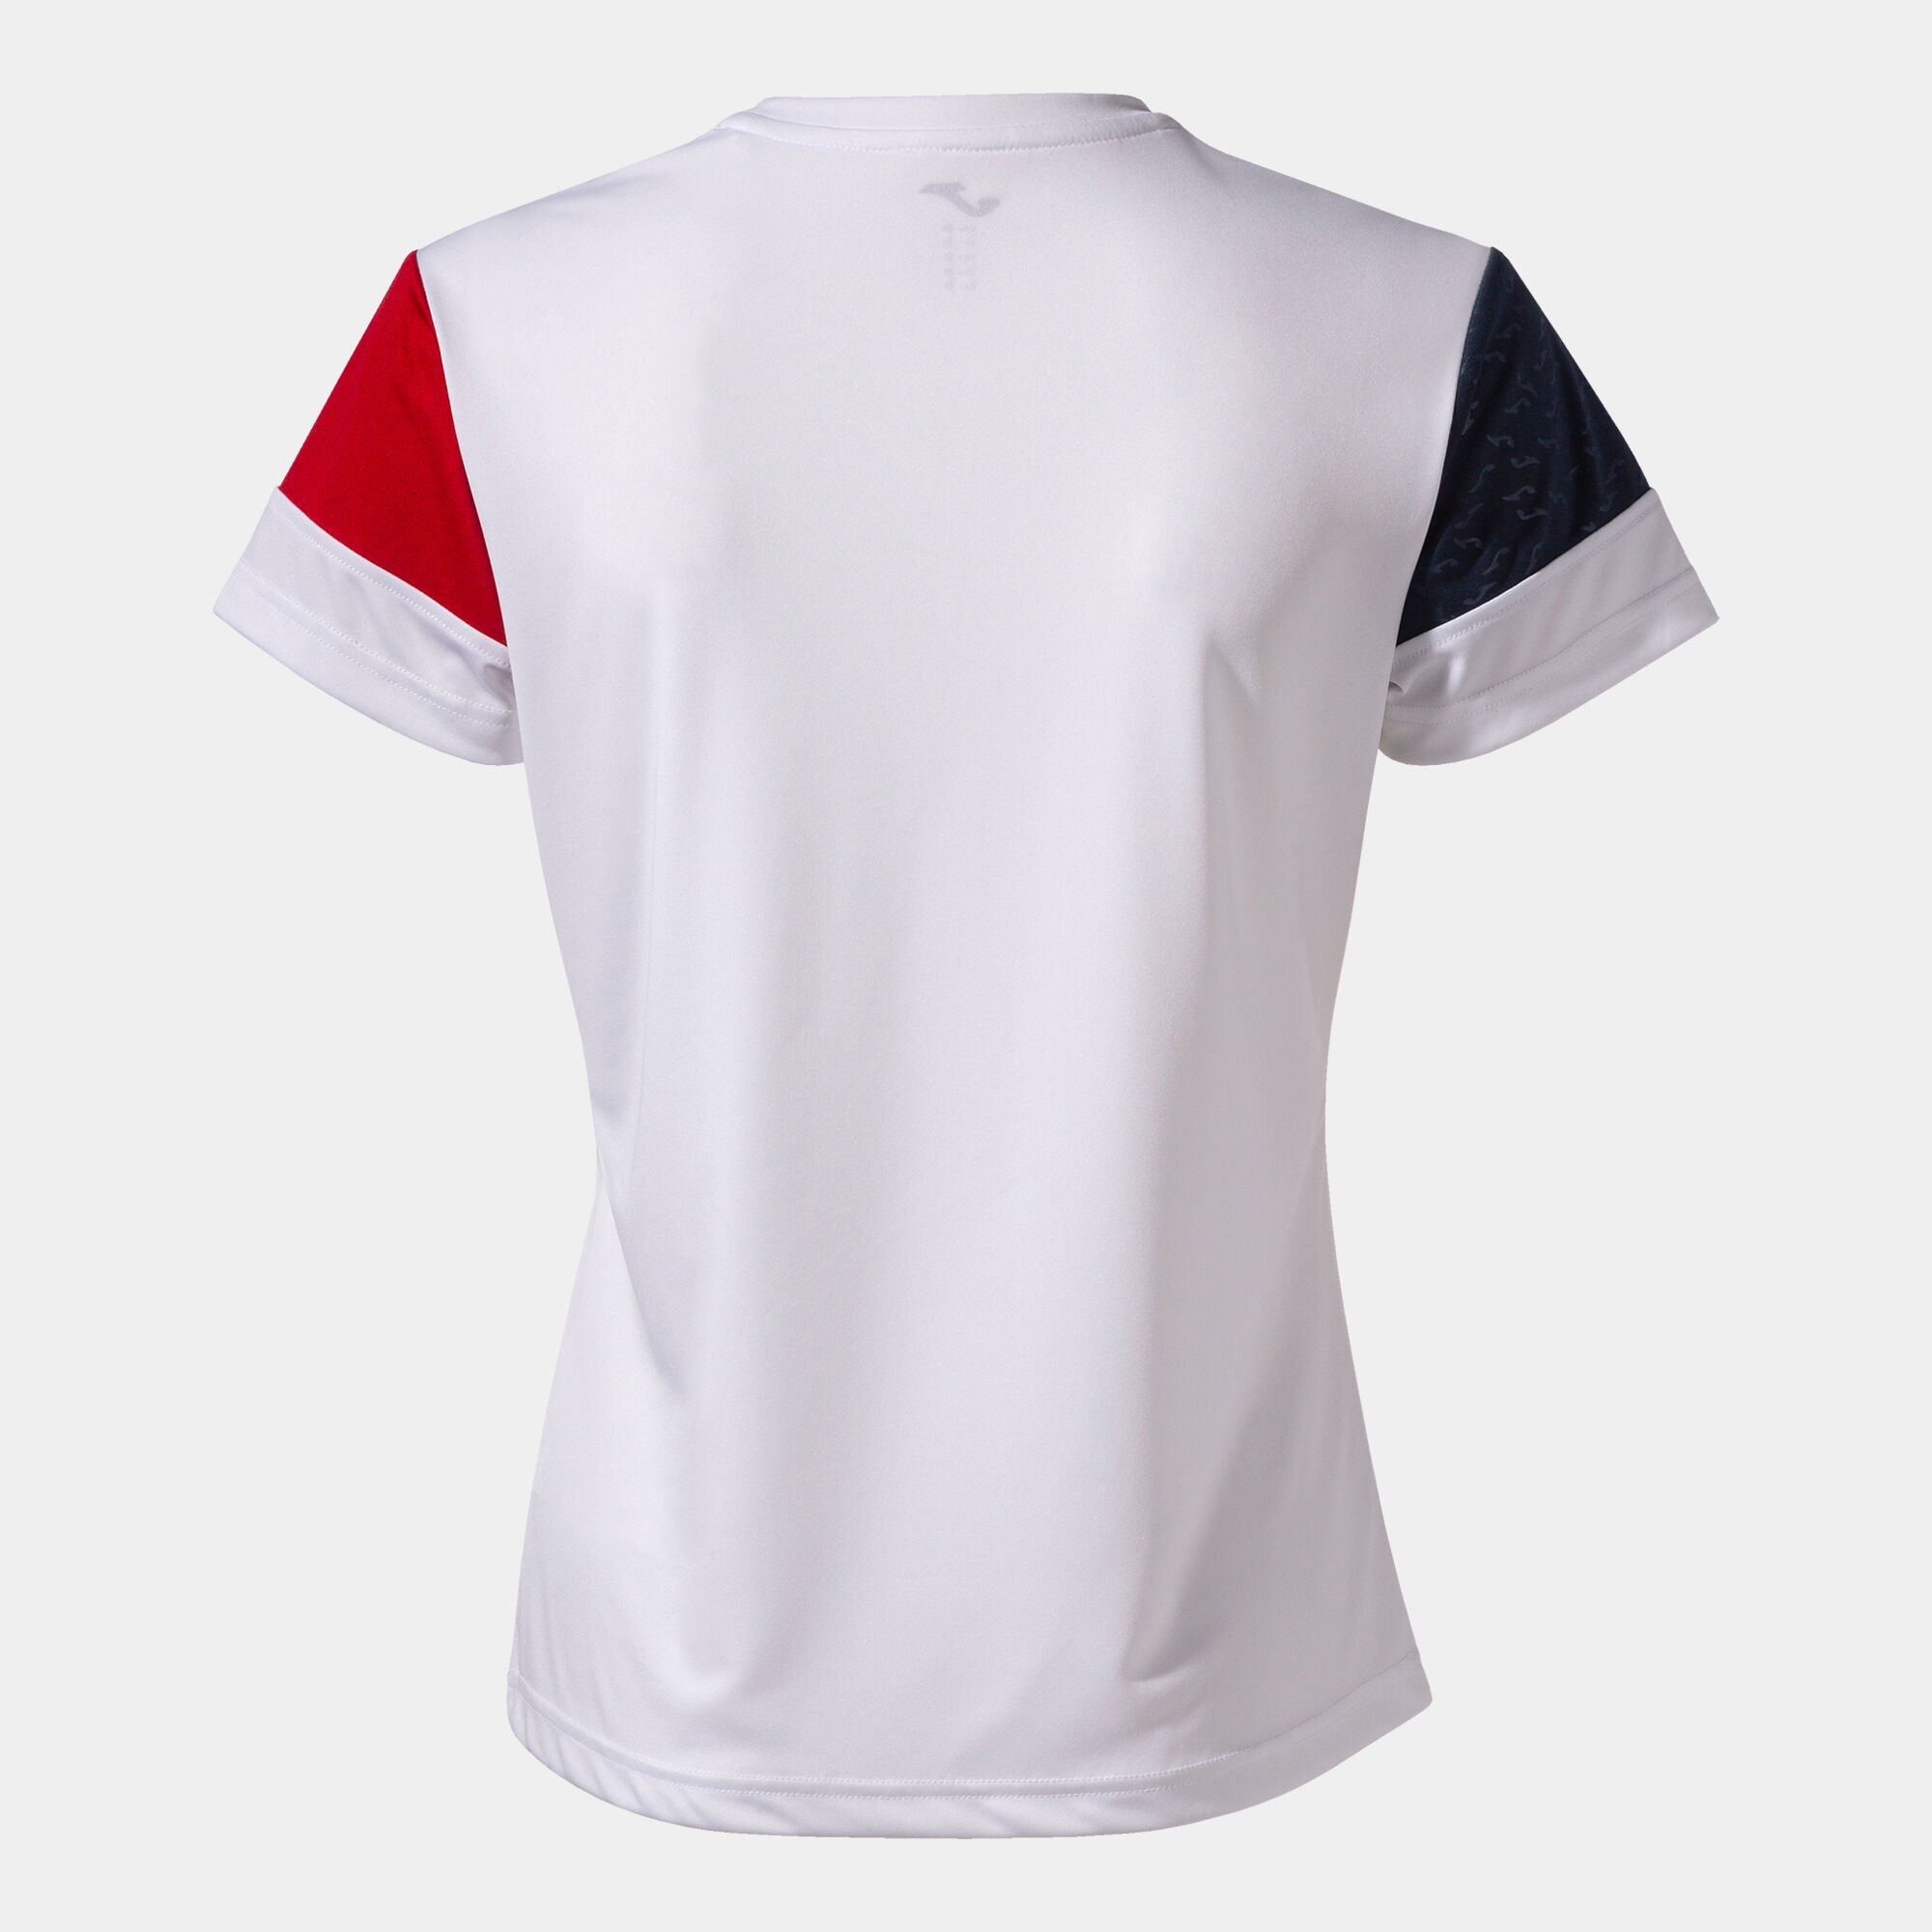 Camiseta manga corta mujer Crew V blanco rojo marino